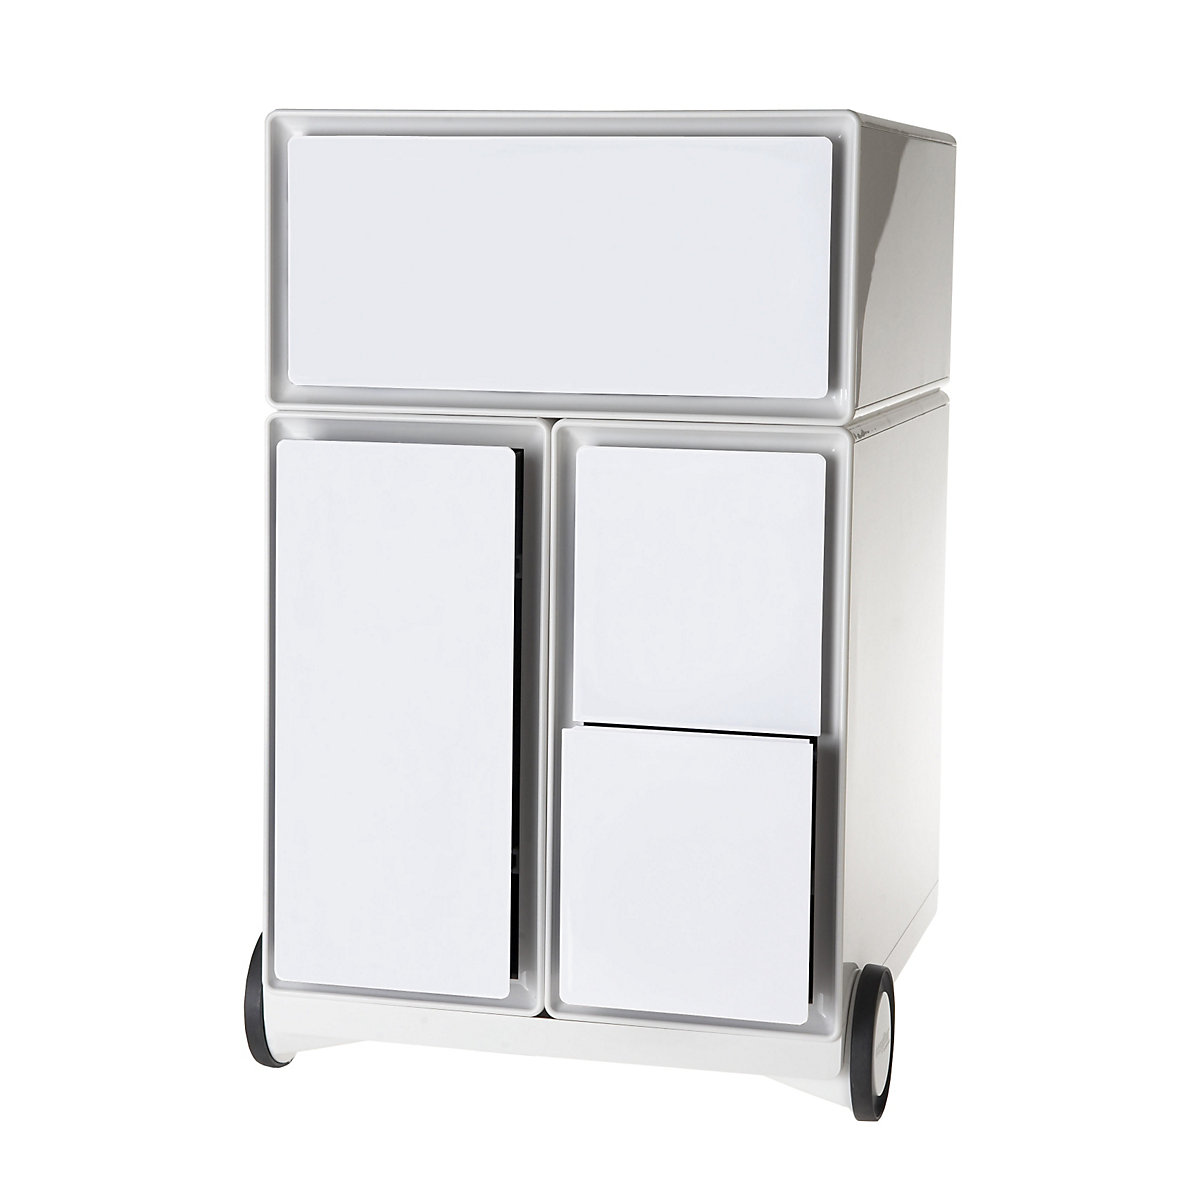 Paperflow – Buck rodante easyBox®, 1 cajón, 1 cajón para archivadores colgantes, 2 cajones para CD, blanco / blanco